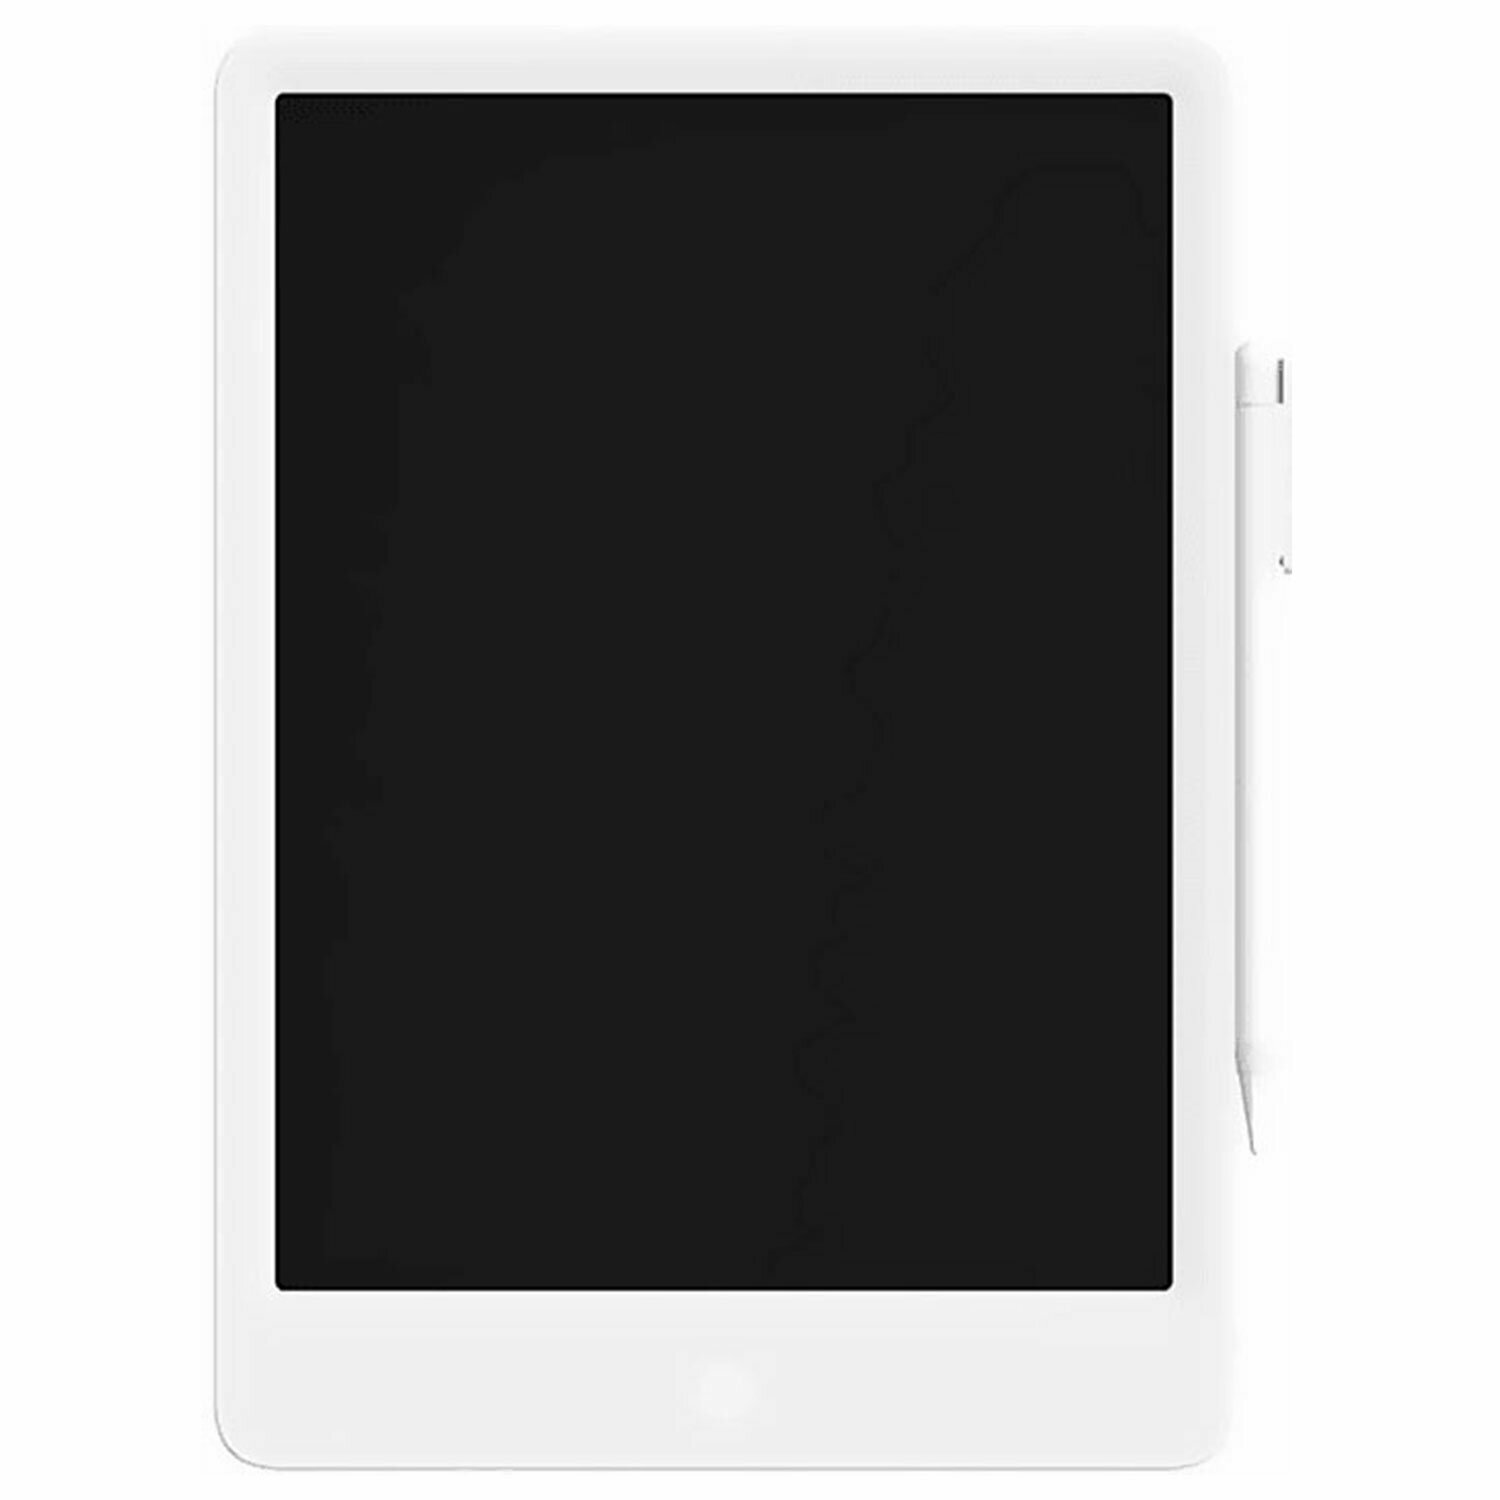 Планшет графический XIAOMI Mi LCD Writing Tablet 13.5" (Color Edition) цветной экран белый /Квант продажи 1 ед./